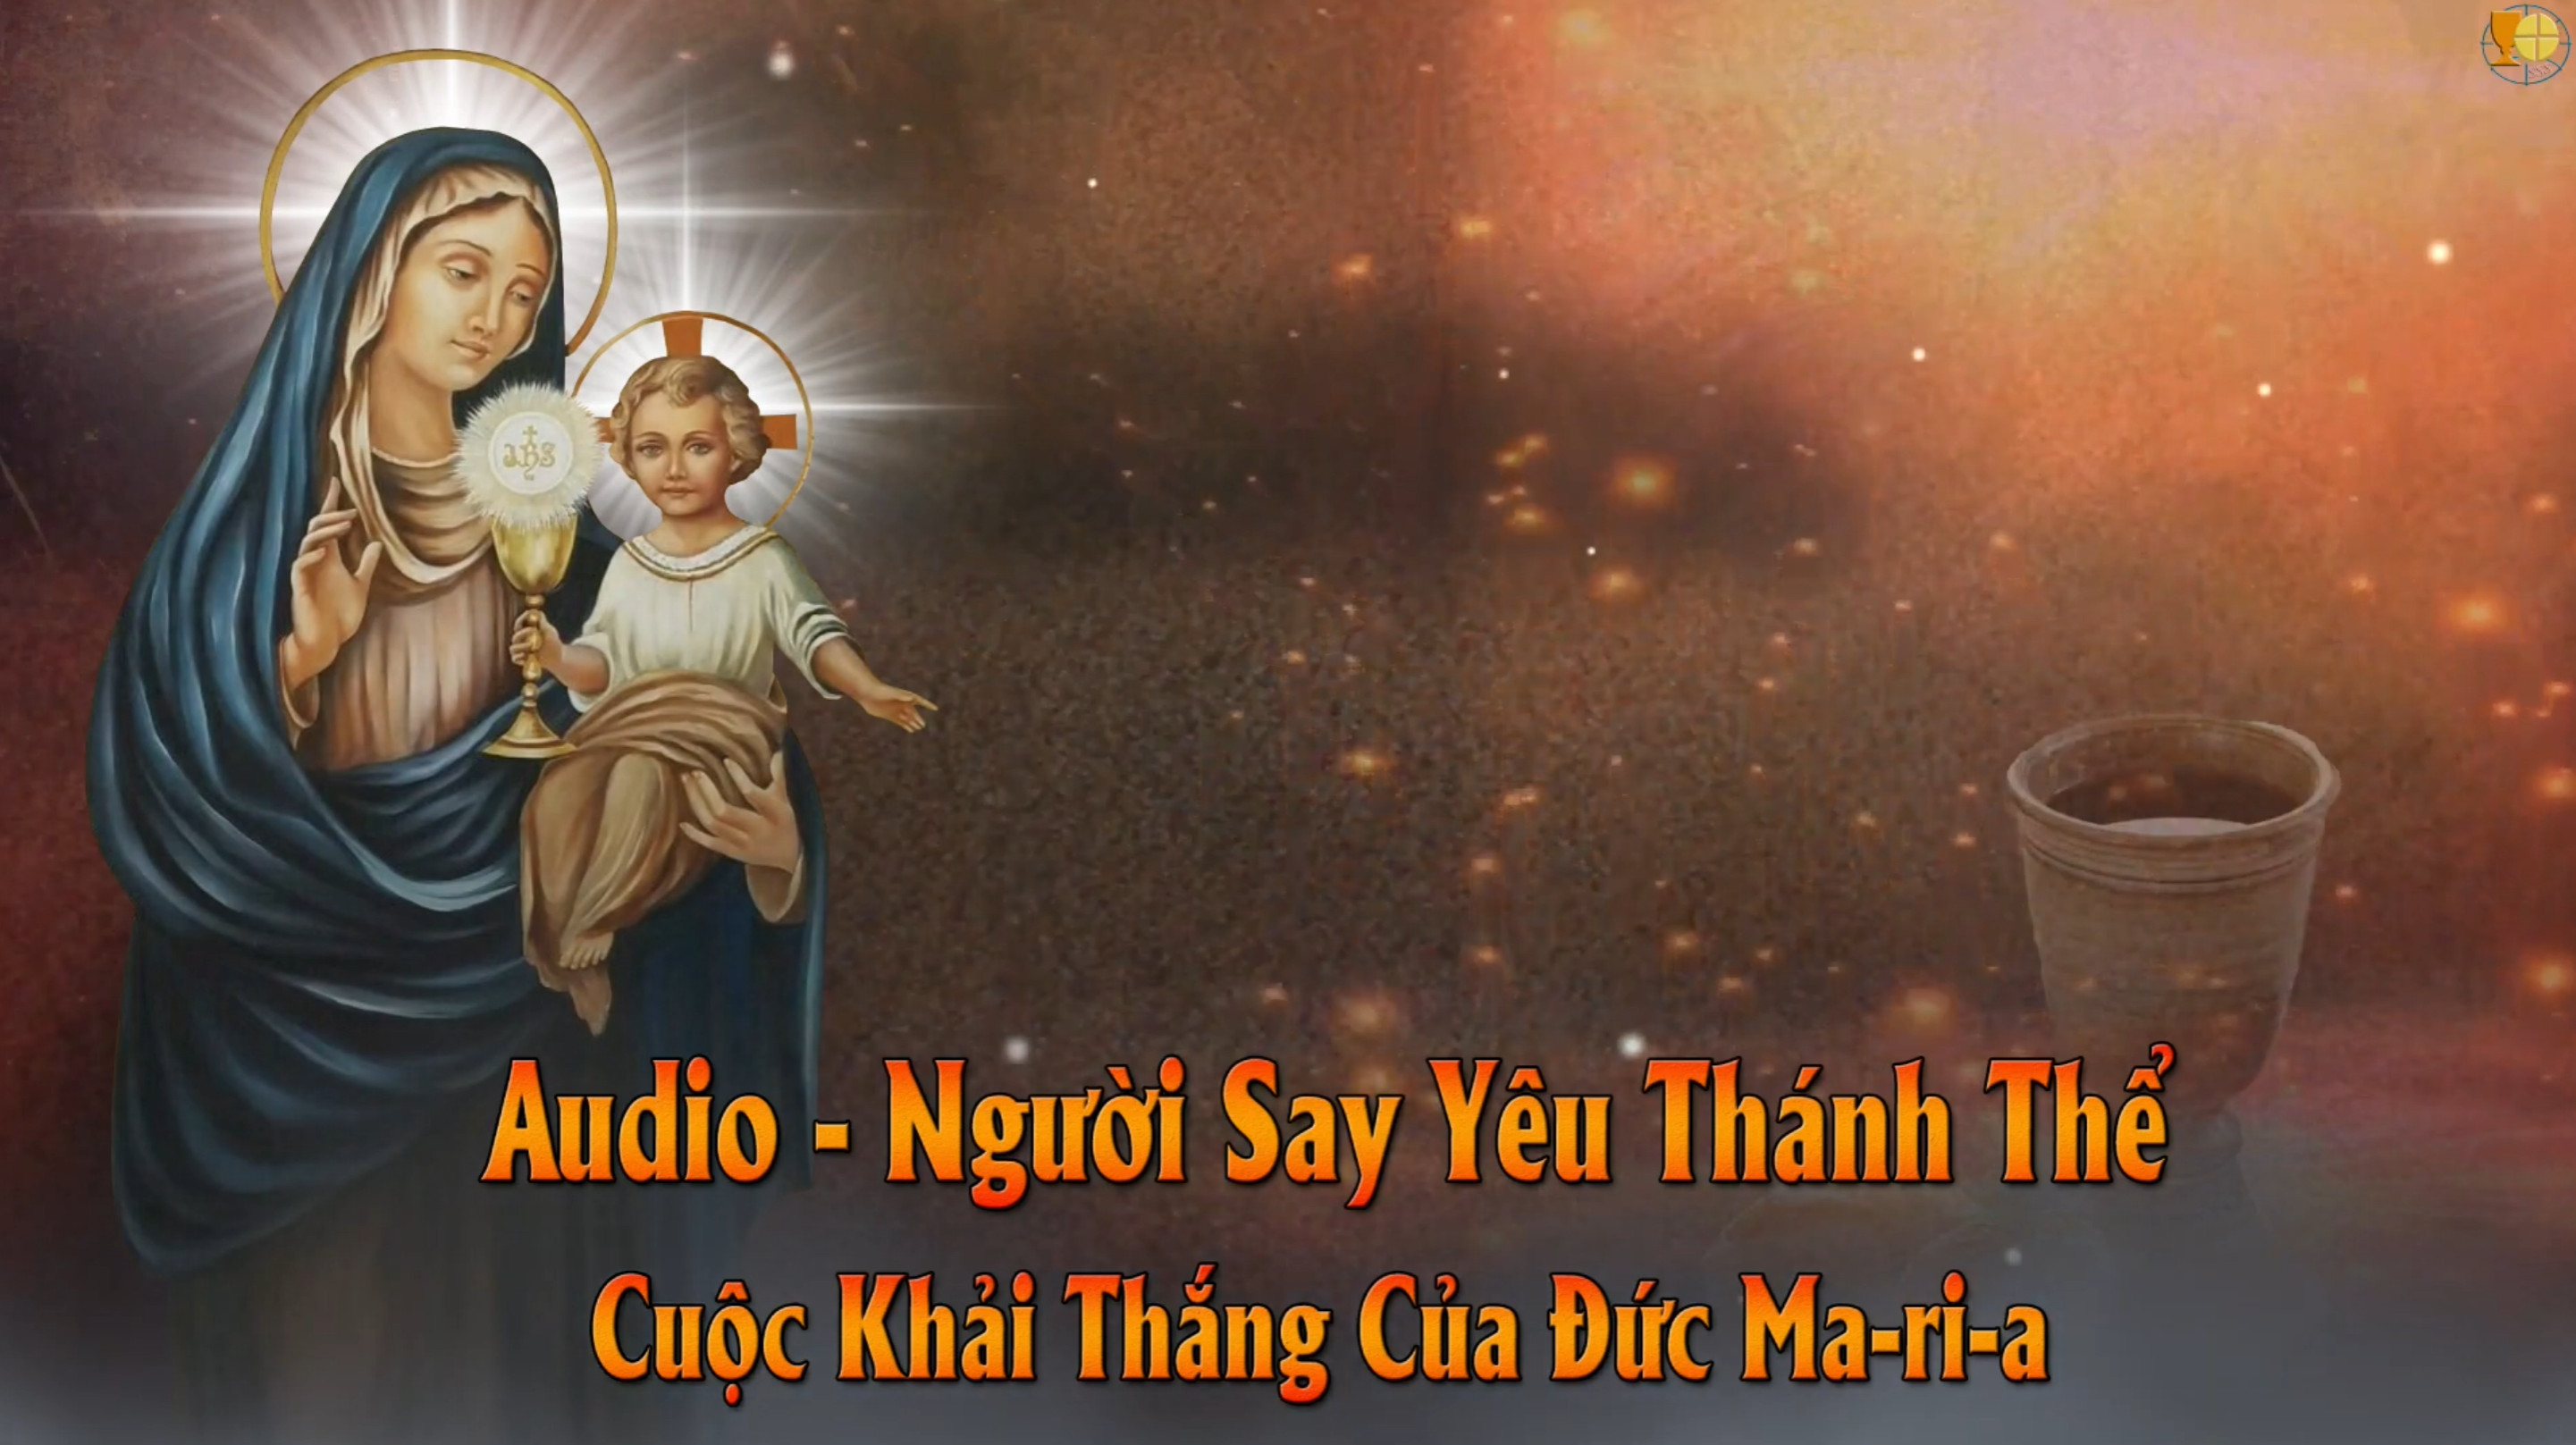 Audio - Cuộc Khải Thắng Của Đức Ma-ri-a